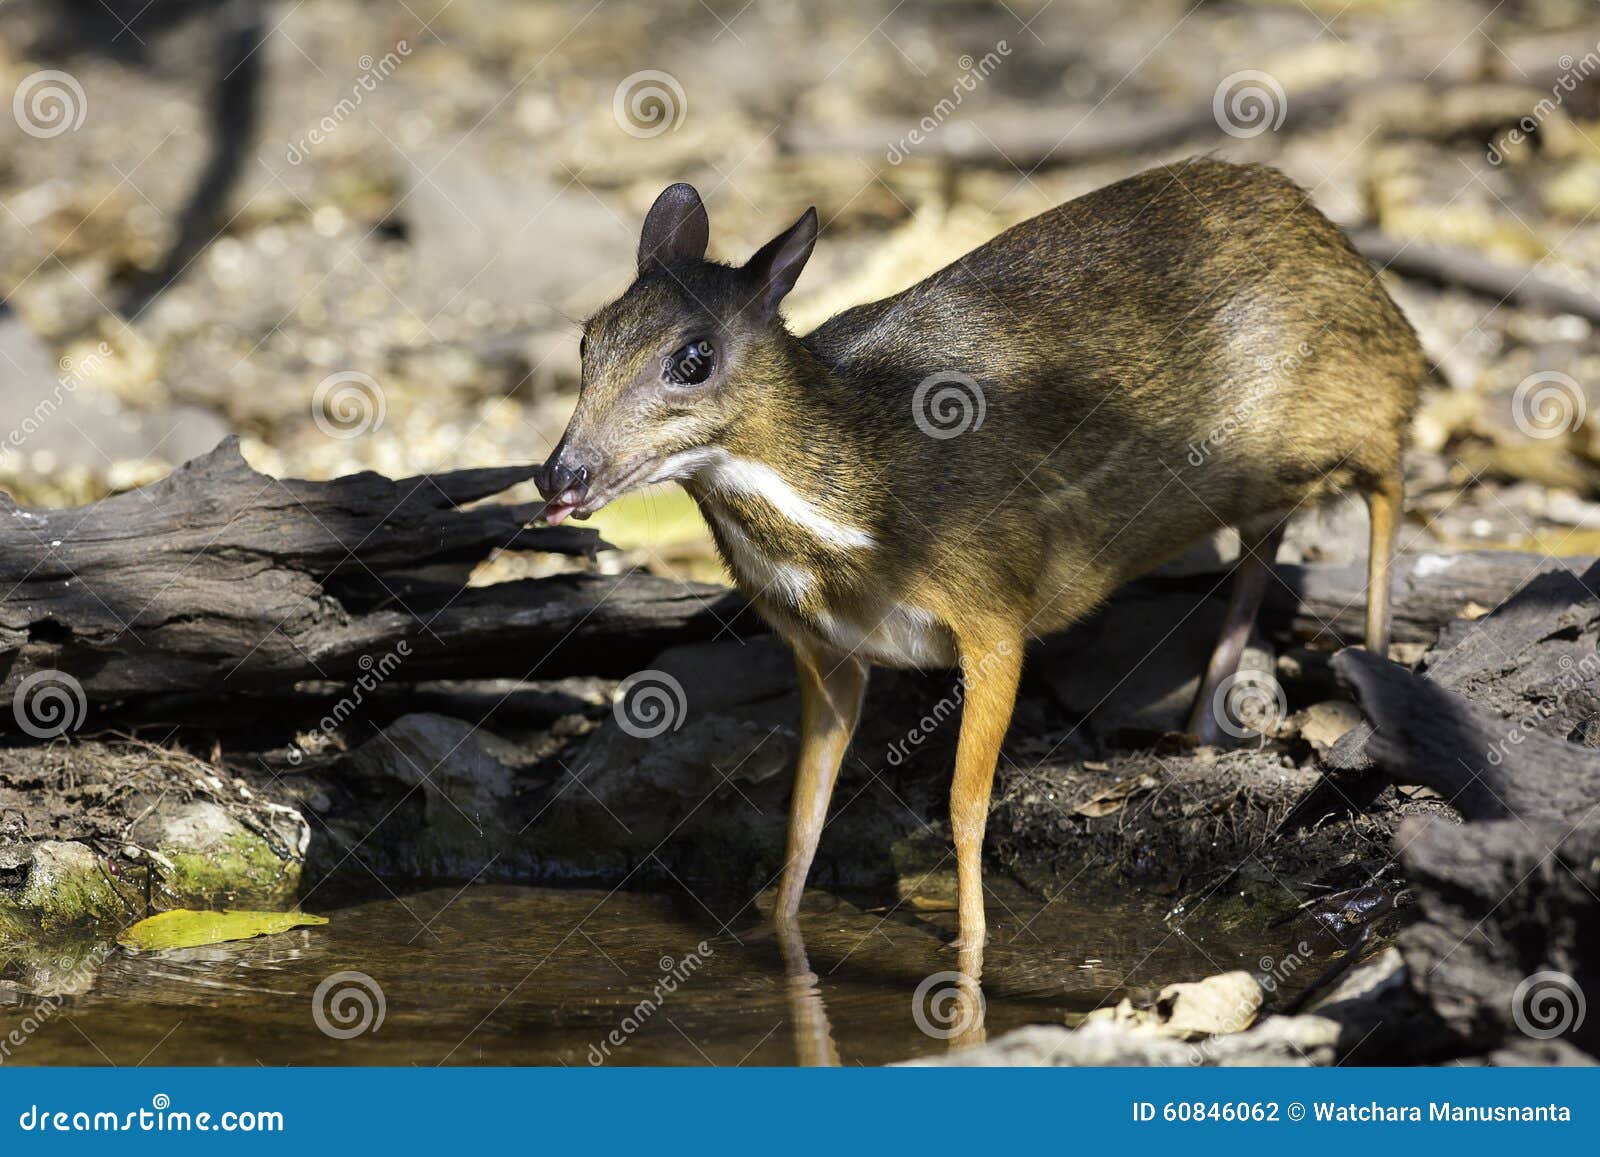 看起來像老鼠 世界最小的鹿僅重1公斤多 | 爪哇 | 鼷鹿 | 有蹄類動物 | 大紀元